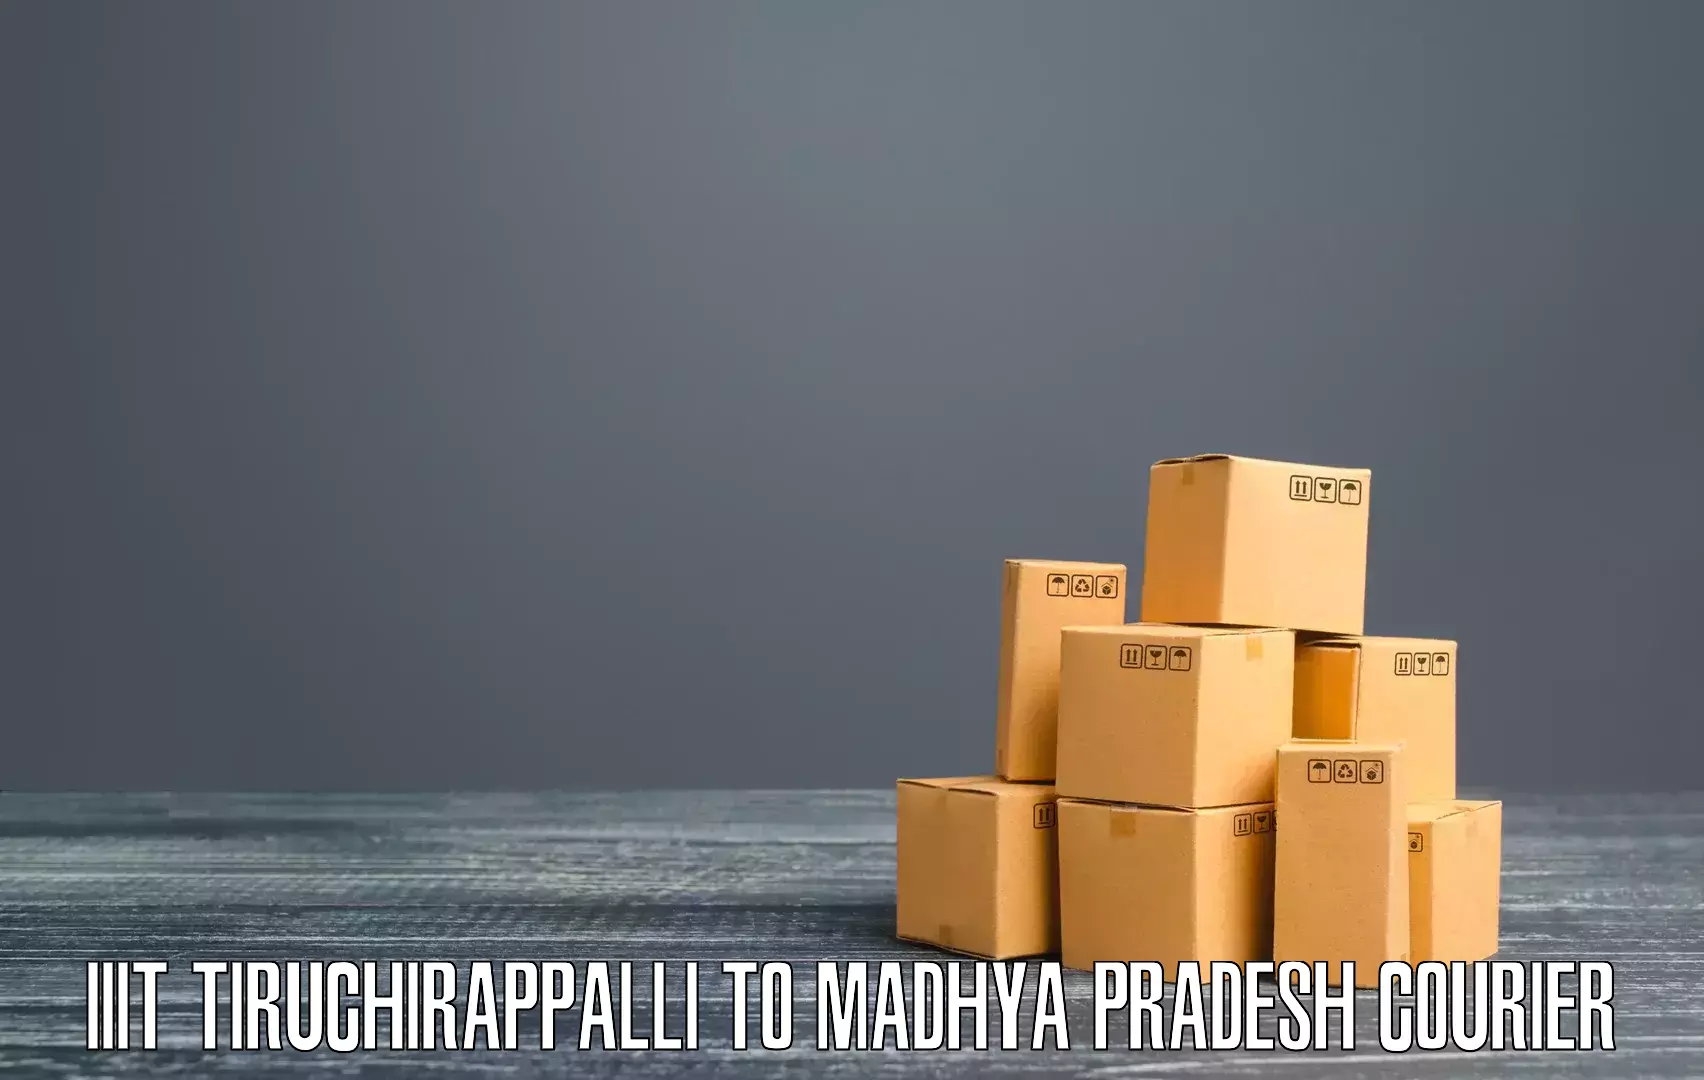 Efficient courier operations IIIT Tiruchirappalli to Churhat